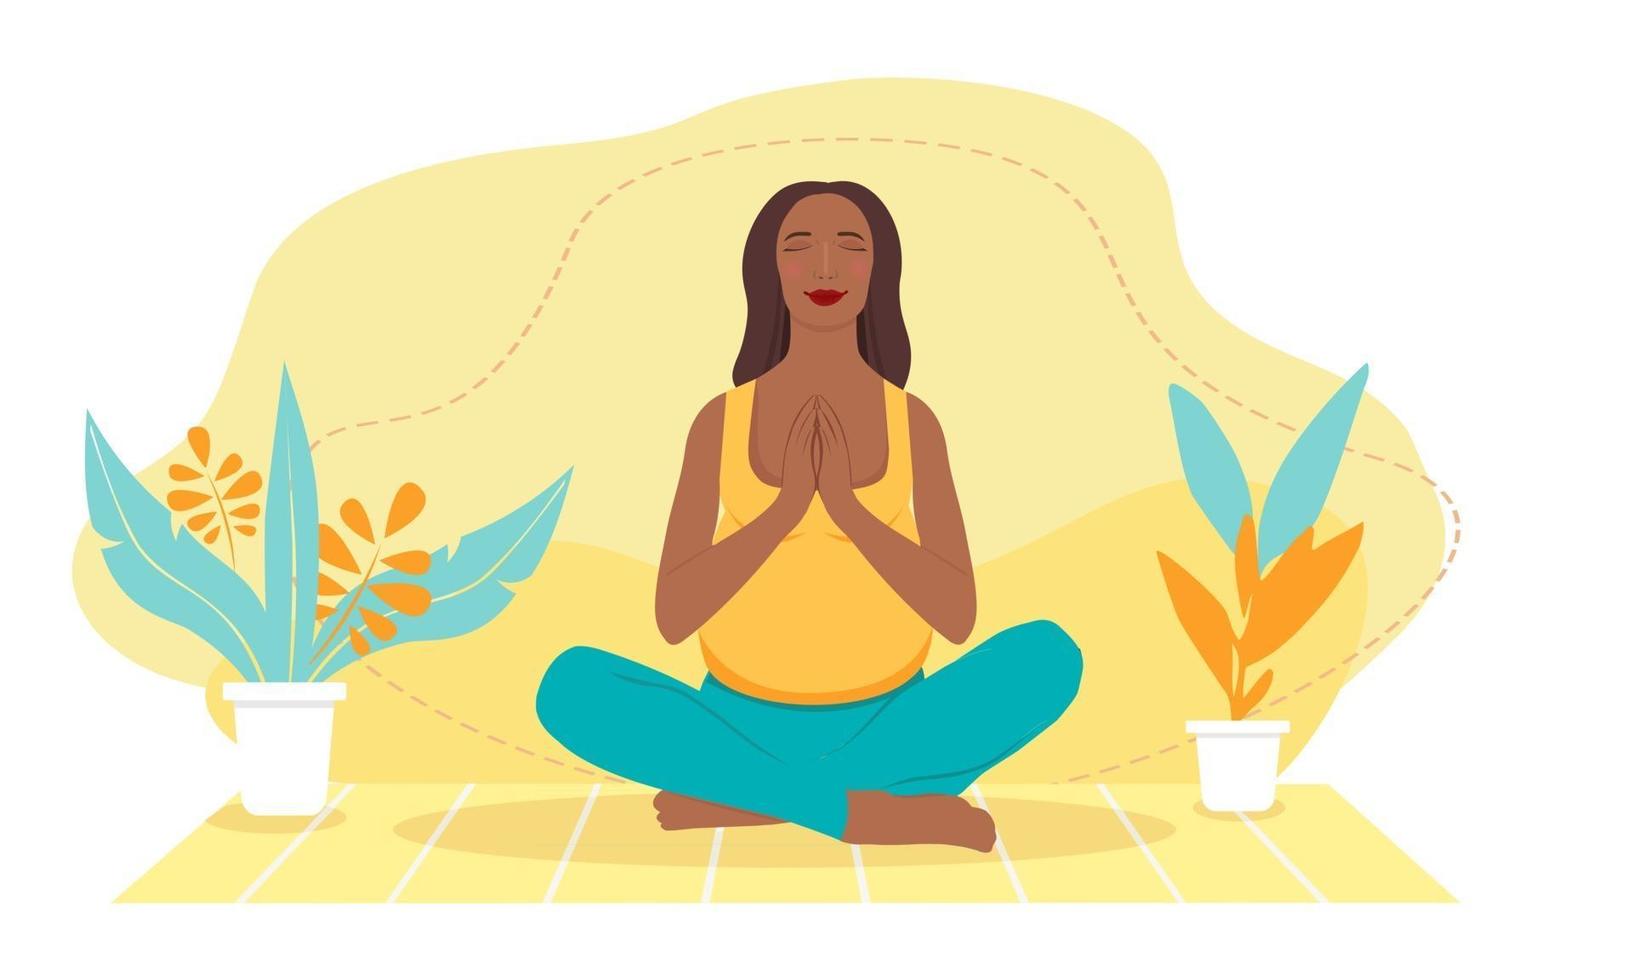 mujer embarazada de piel oscura meditando en casa. Ilustración del concepto de yoga prenatal, meditación, relajación, recreación, estilo de vida saludable. ilustración en estilo de dibujos animados plana. vector